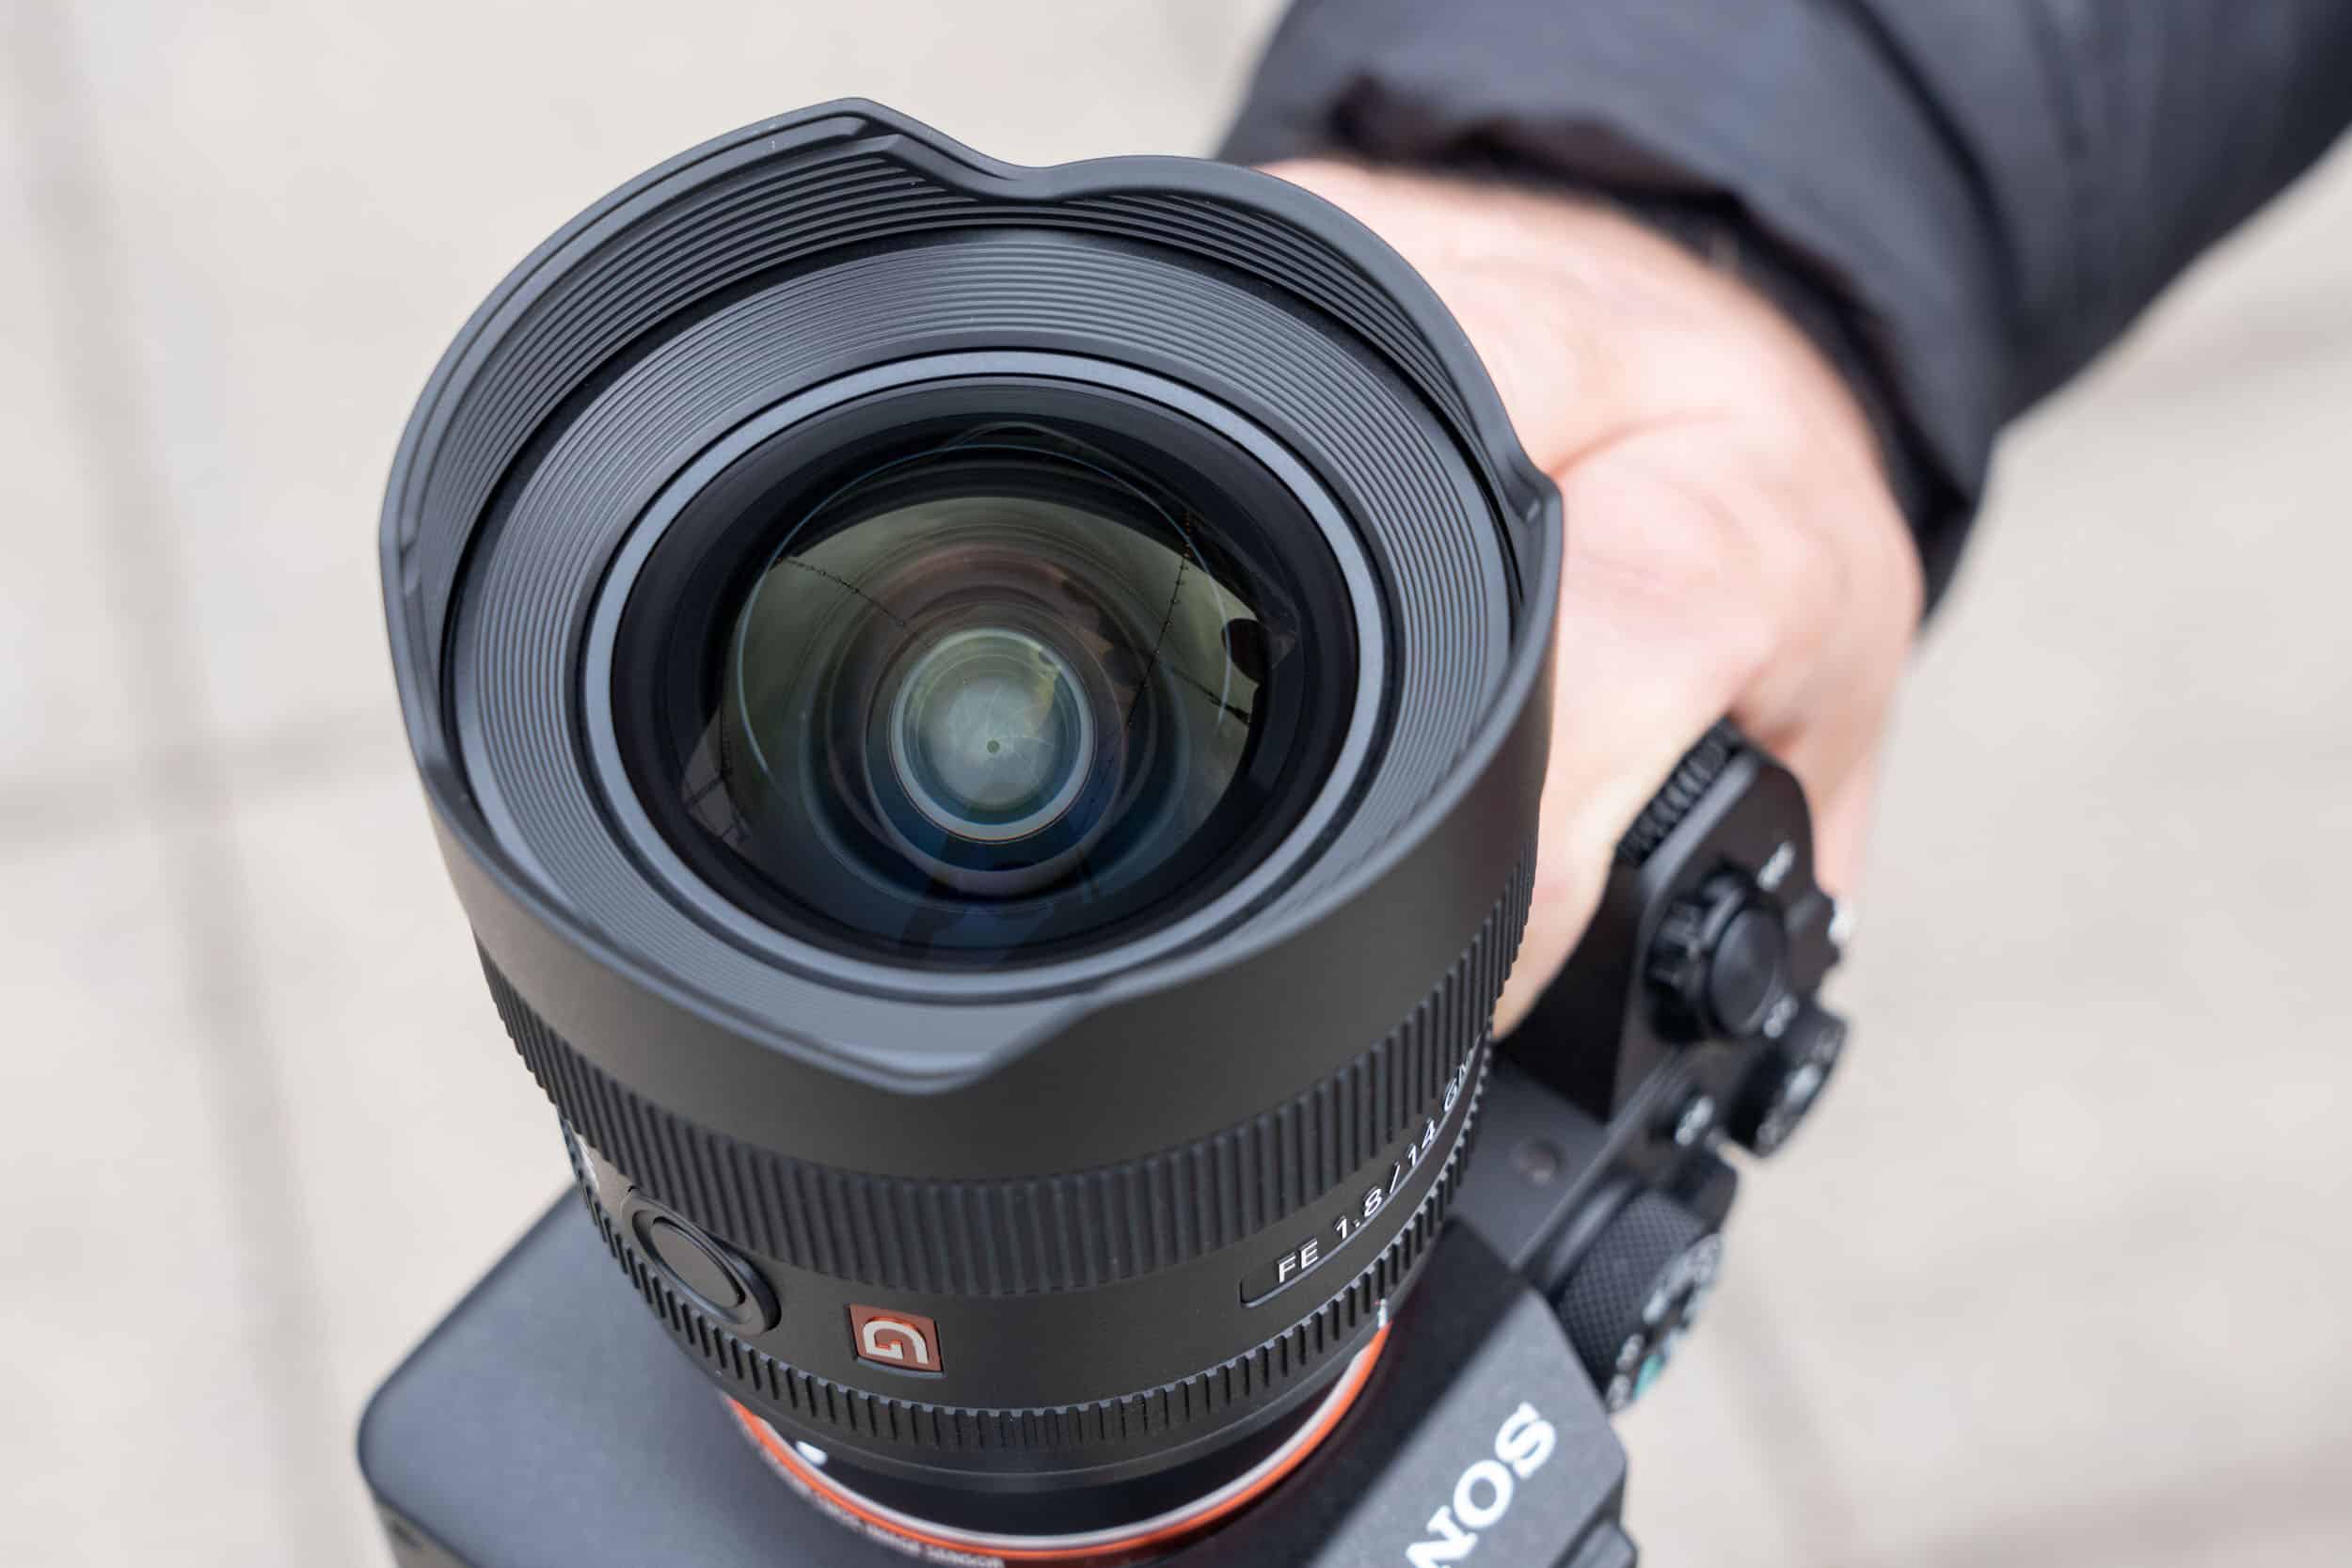 Ống kính góc siêu rộng Sony FE 14mm F1.8 GM ra mắt, nhẹ hơn nhiều so với phiên bản từ Sigma